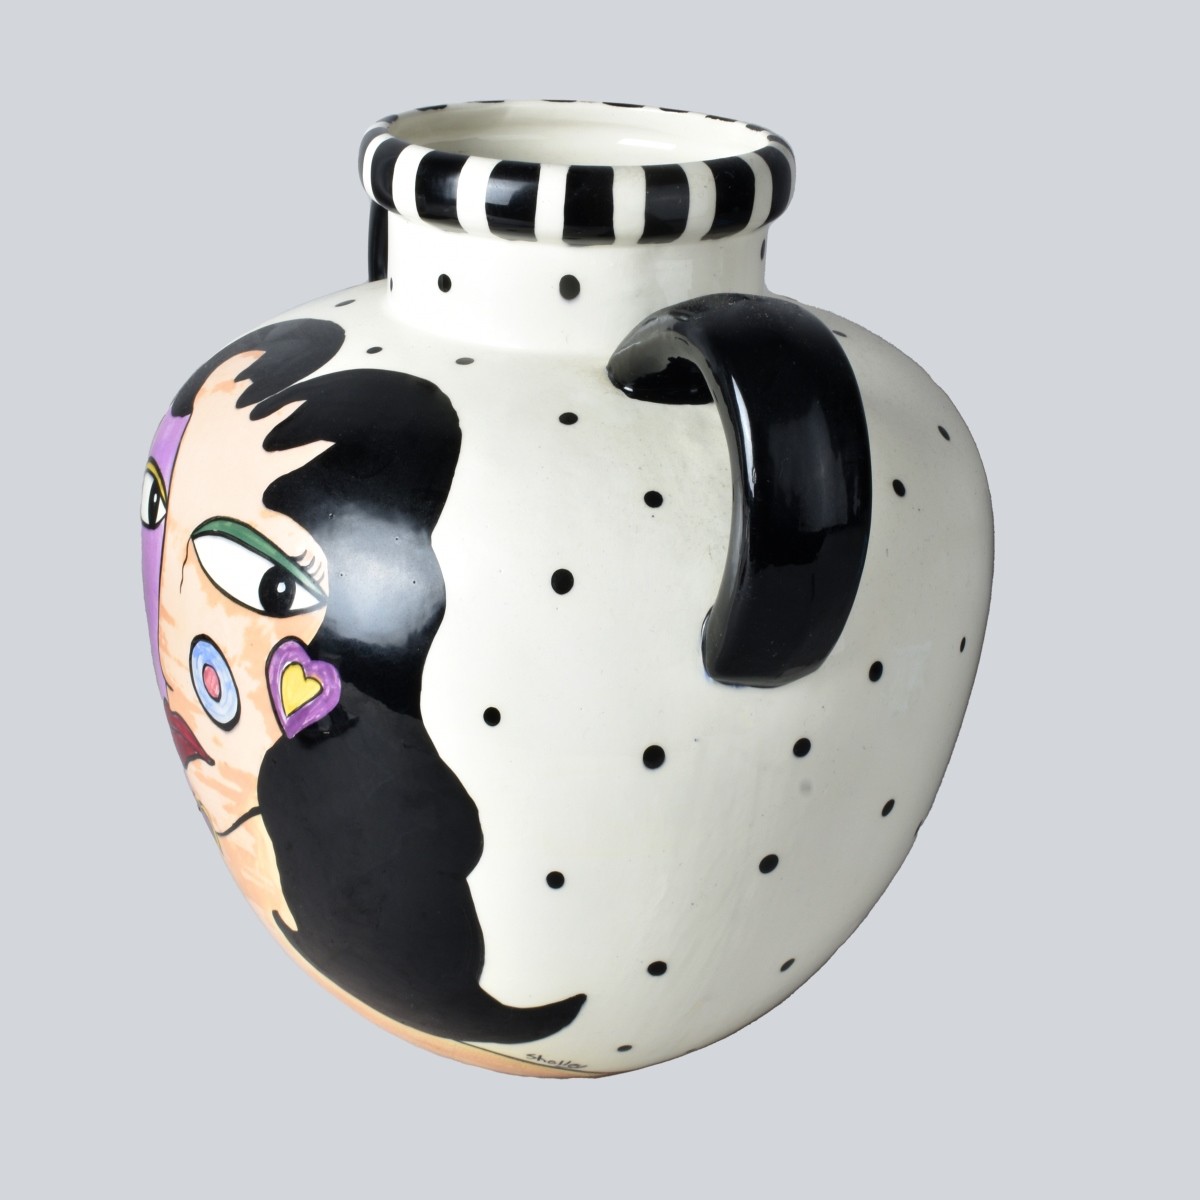 Tall Postmodern Porcelain Vase